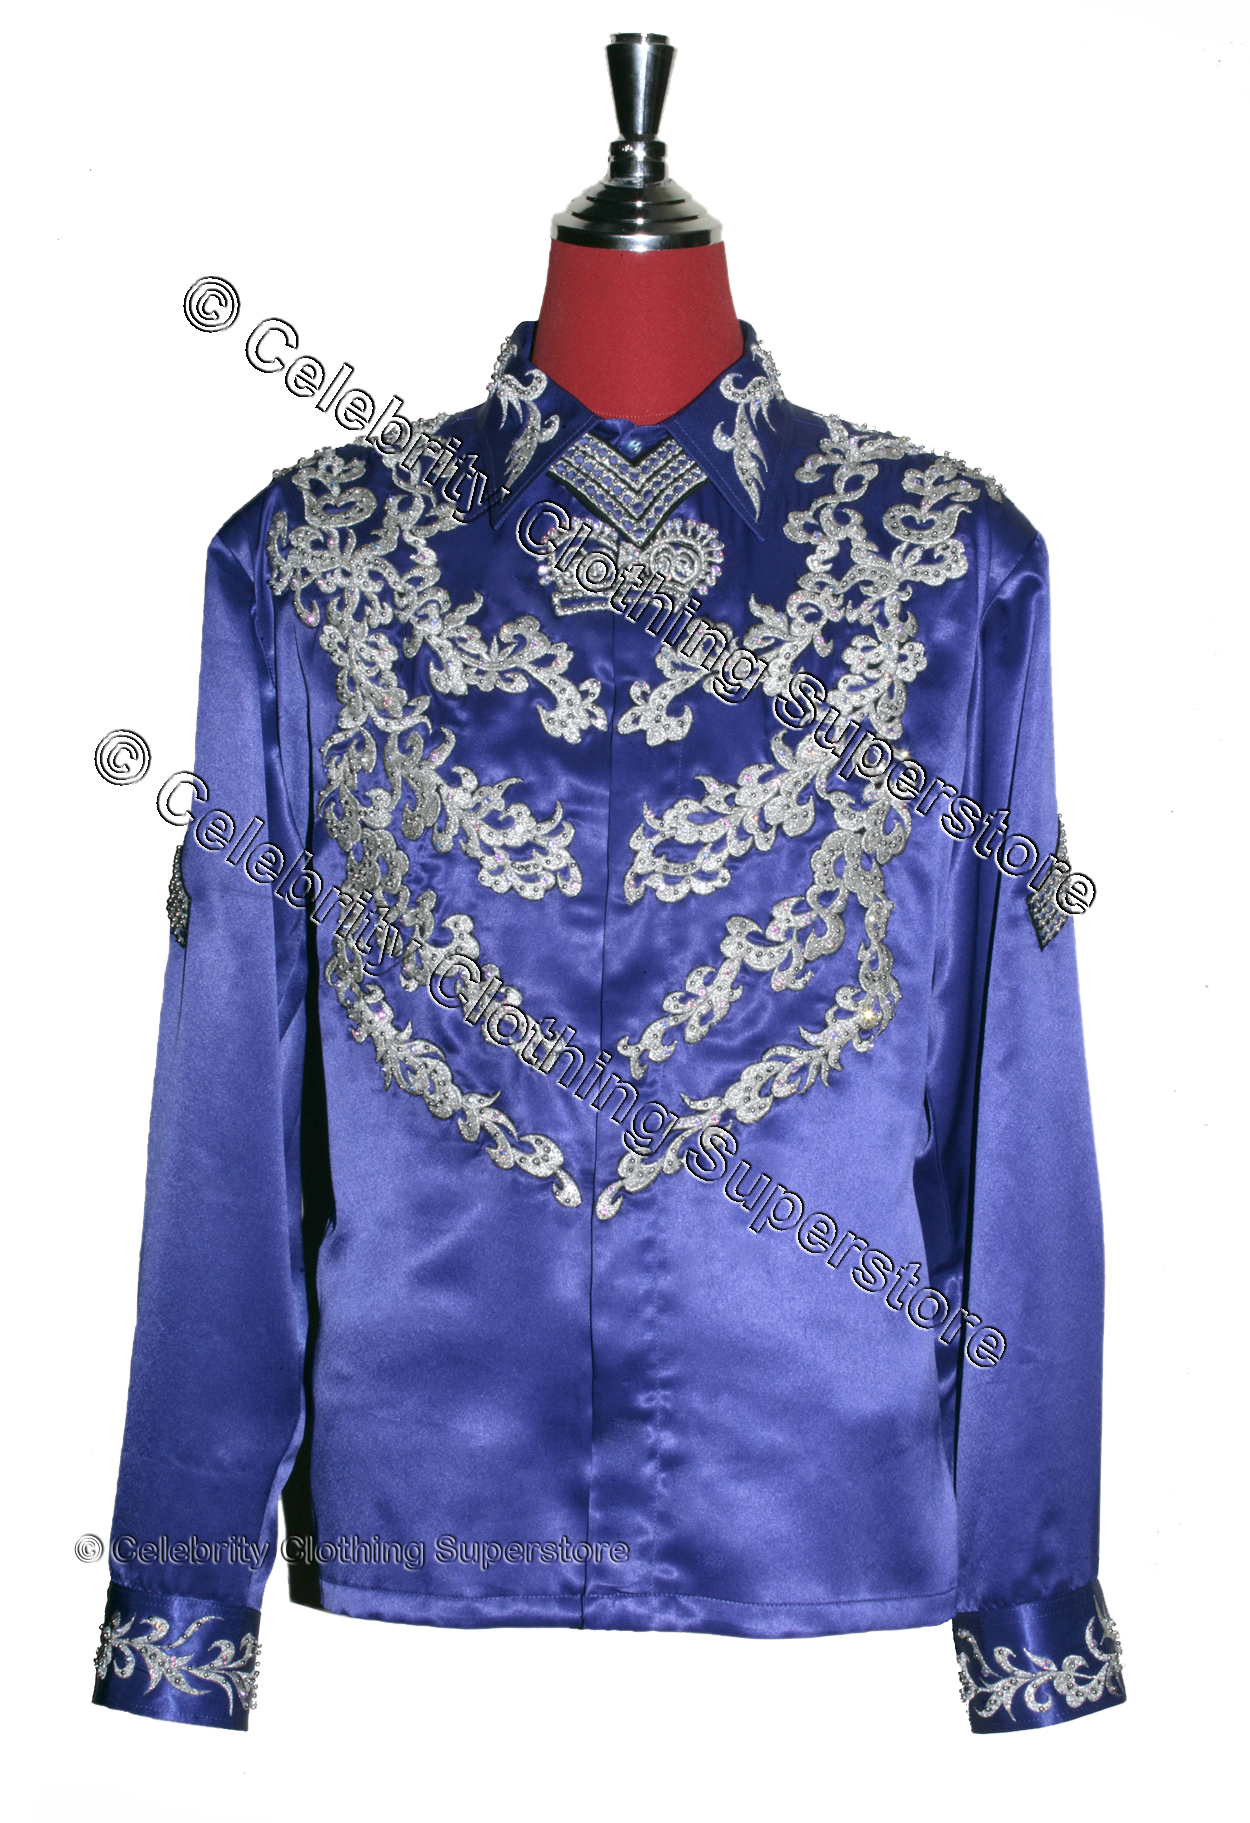 اكبر مجموعة صور لملابس الملك  MJ-Christian-Audigier-Shirt